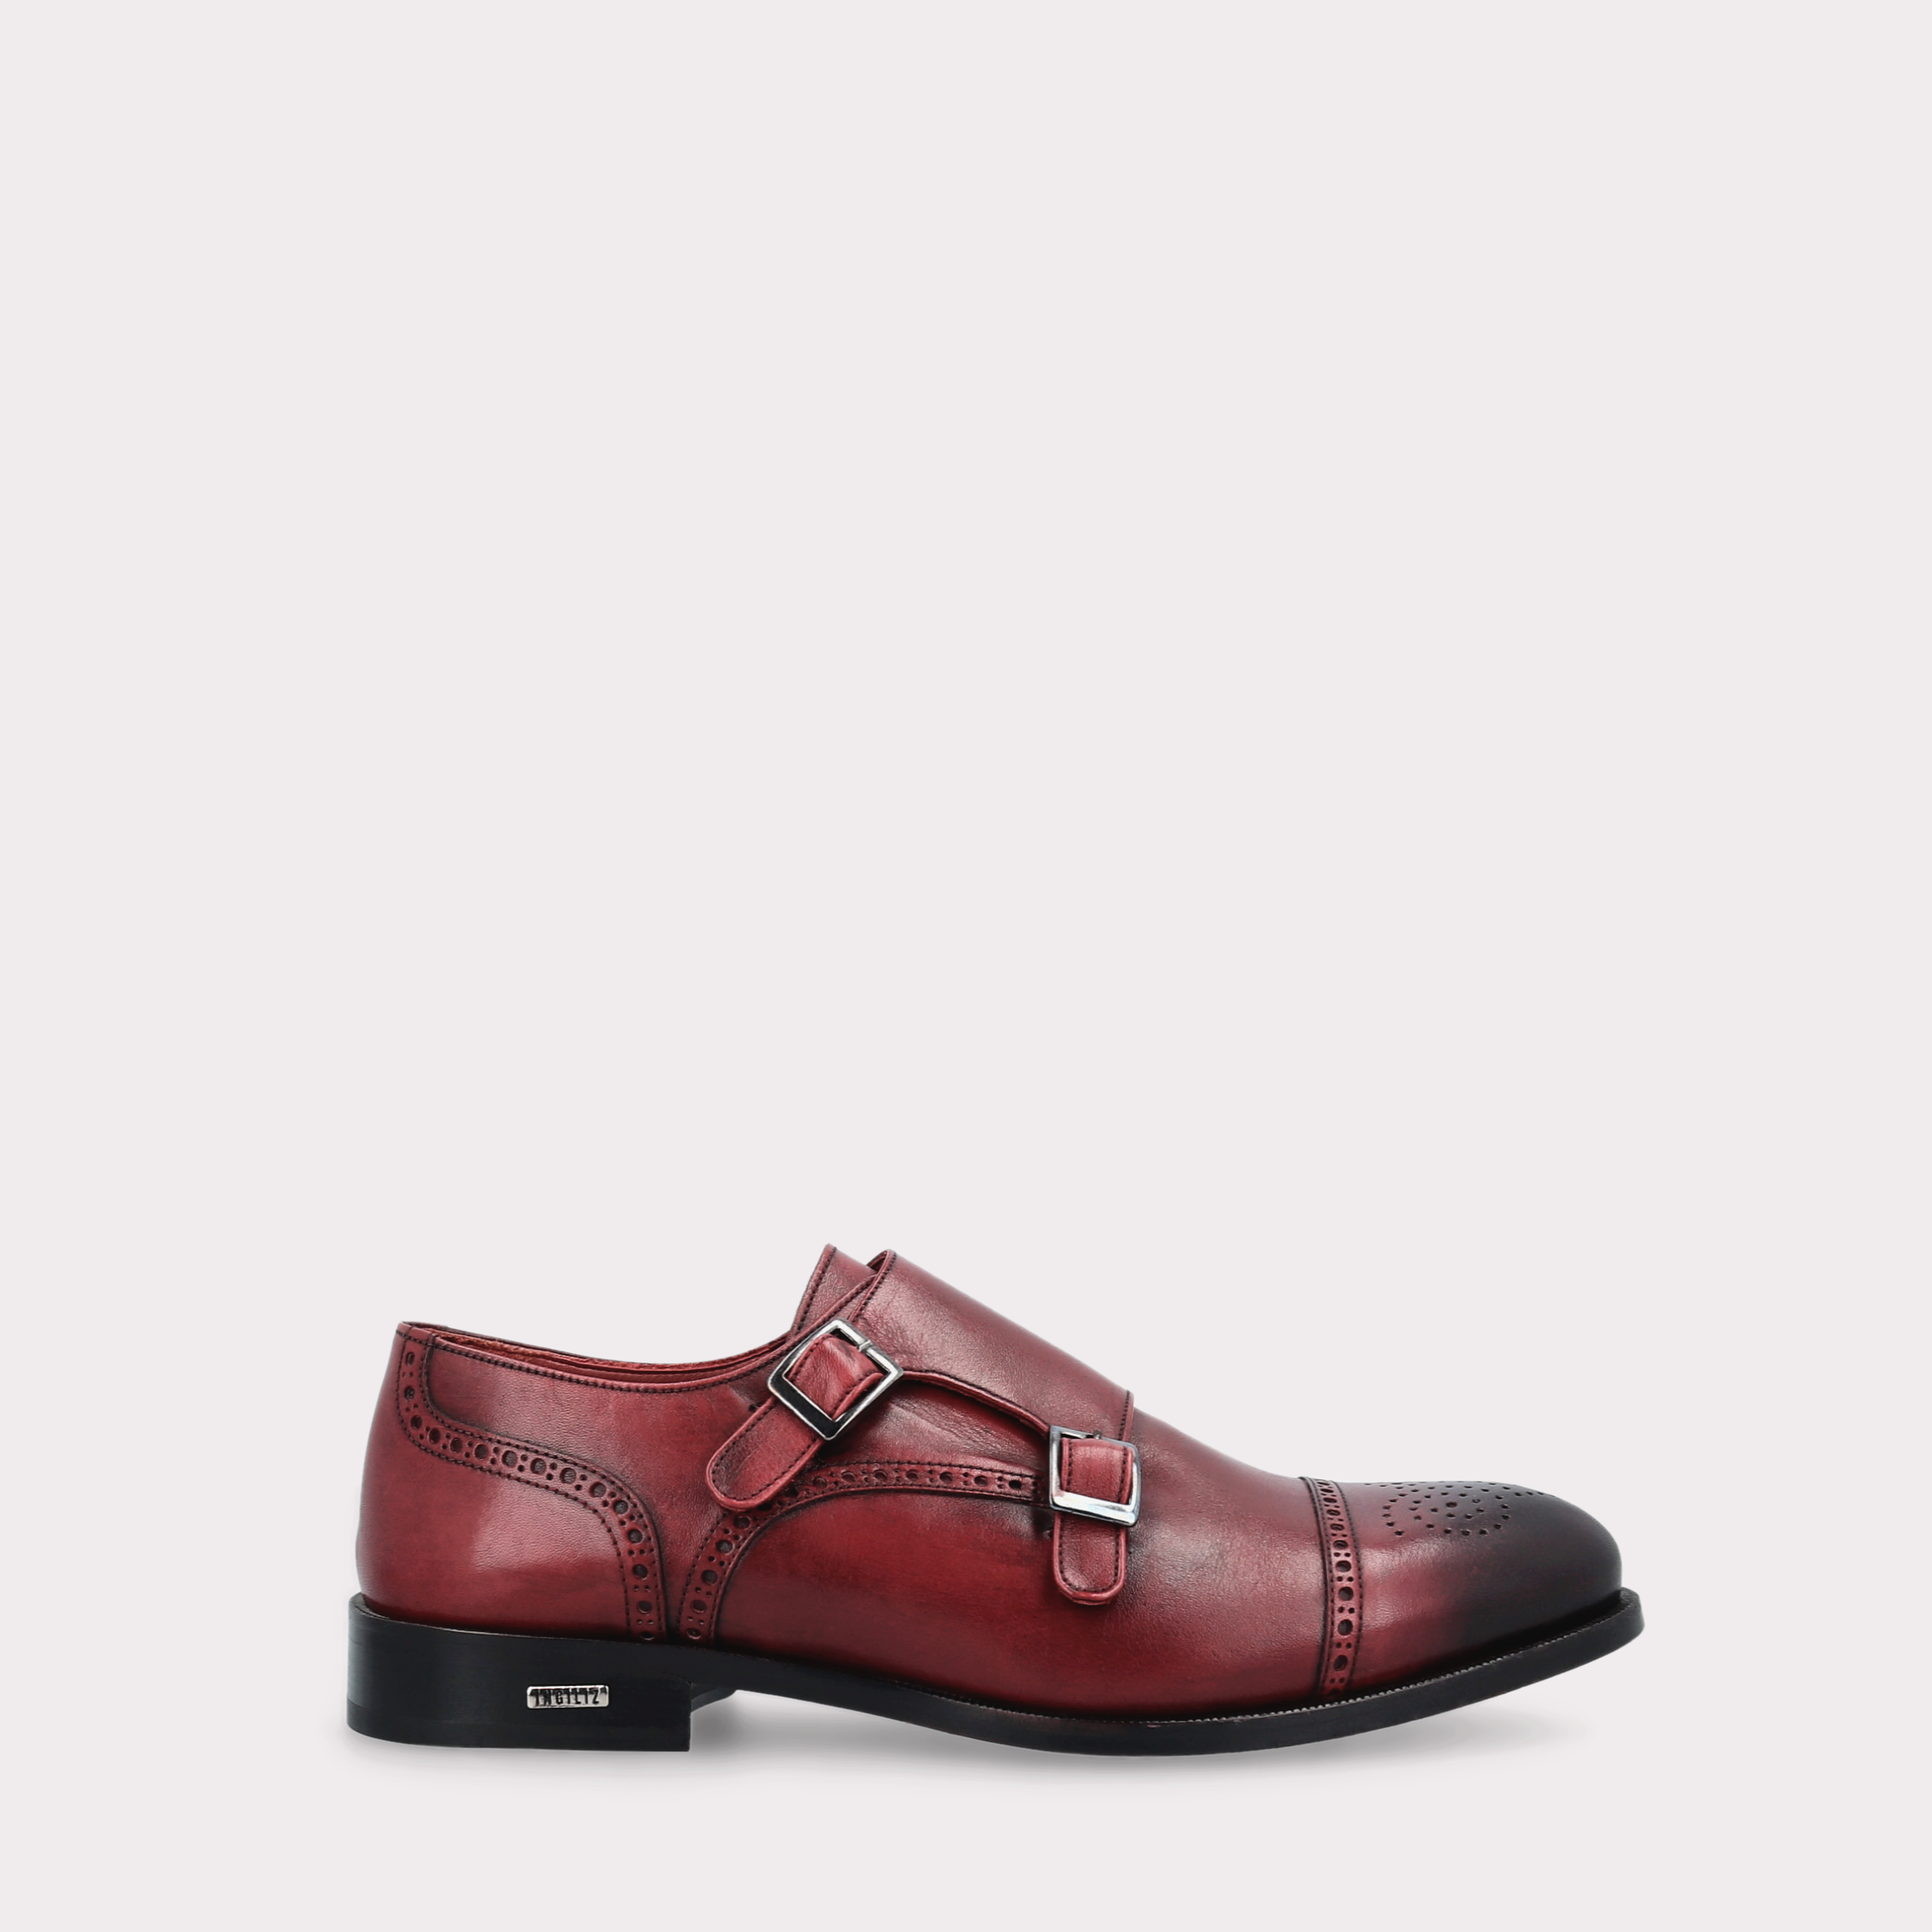 TRENTO 01 bordeaux leather monk strap shoes